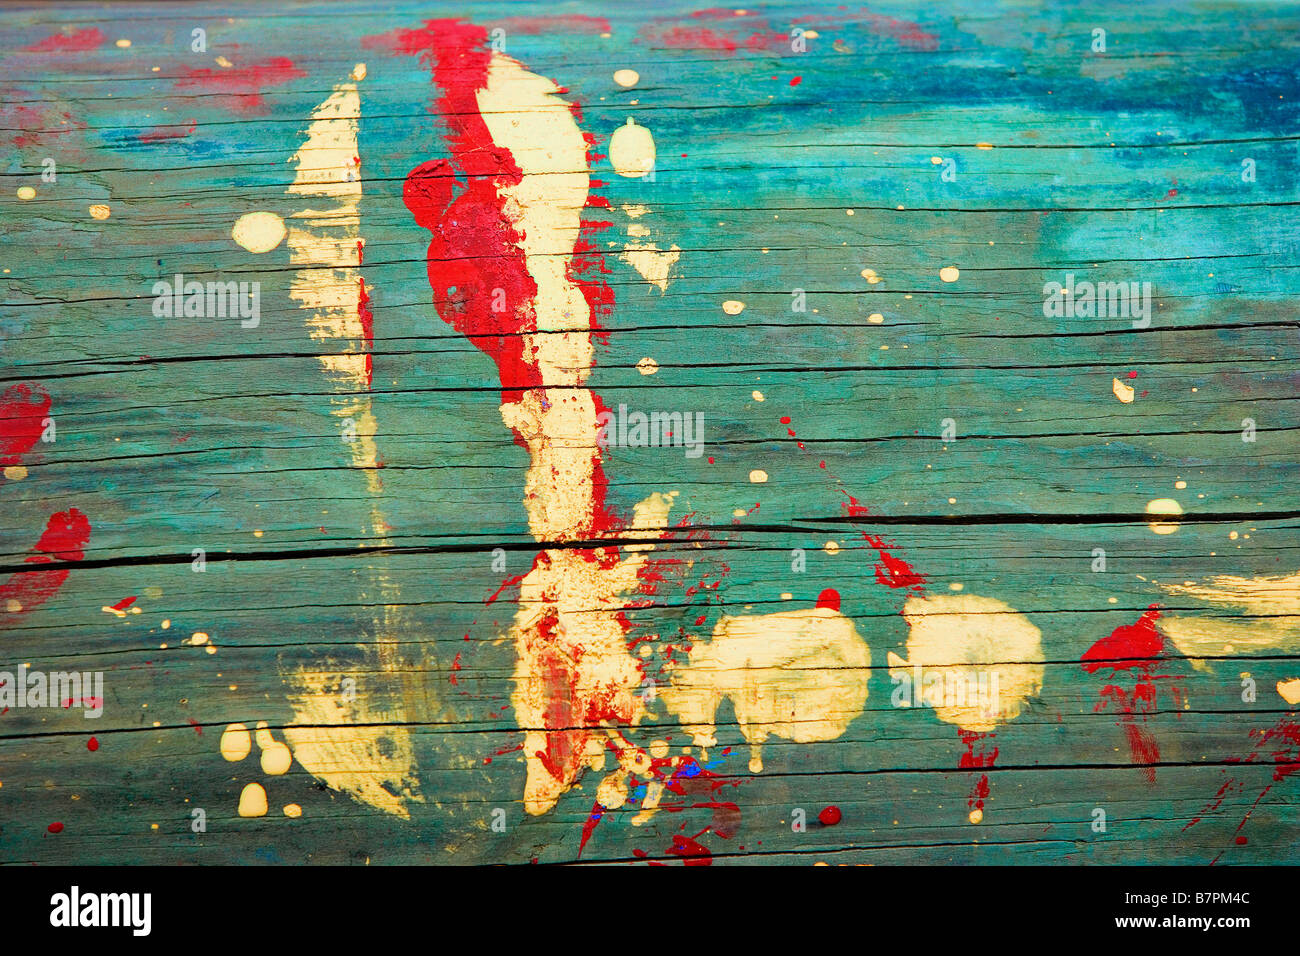 Art abstrait peinture éclaboussa sur un pieux marin Banque D'Images